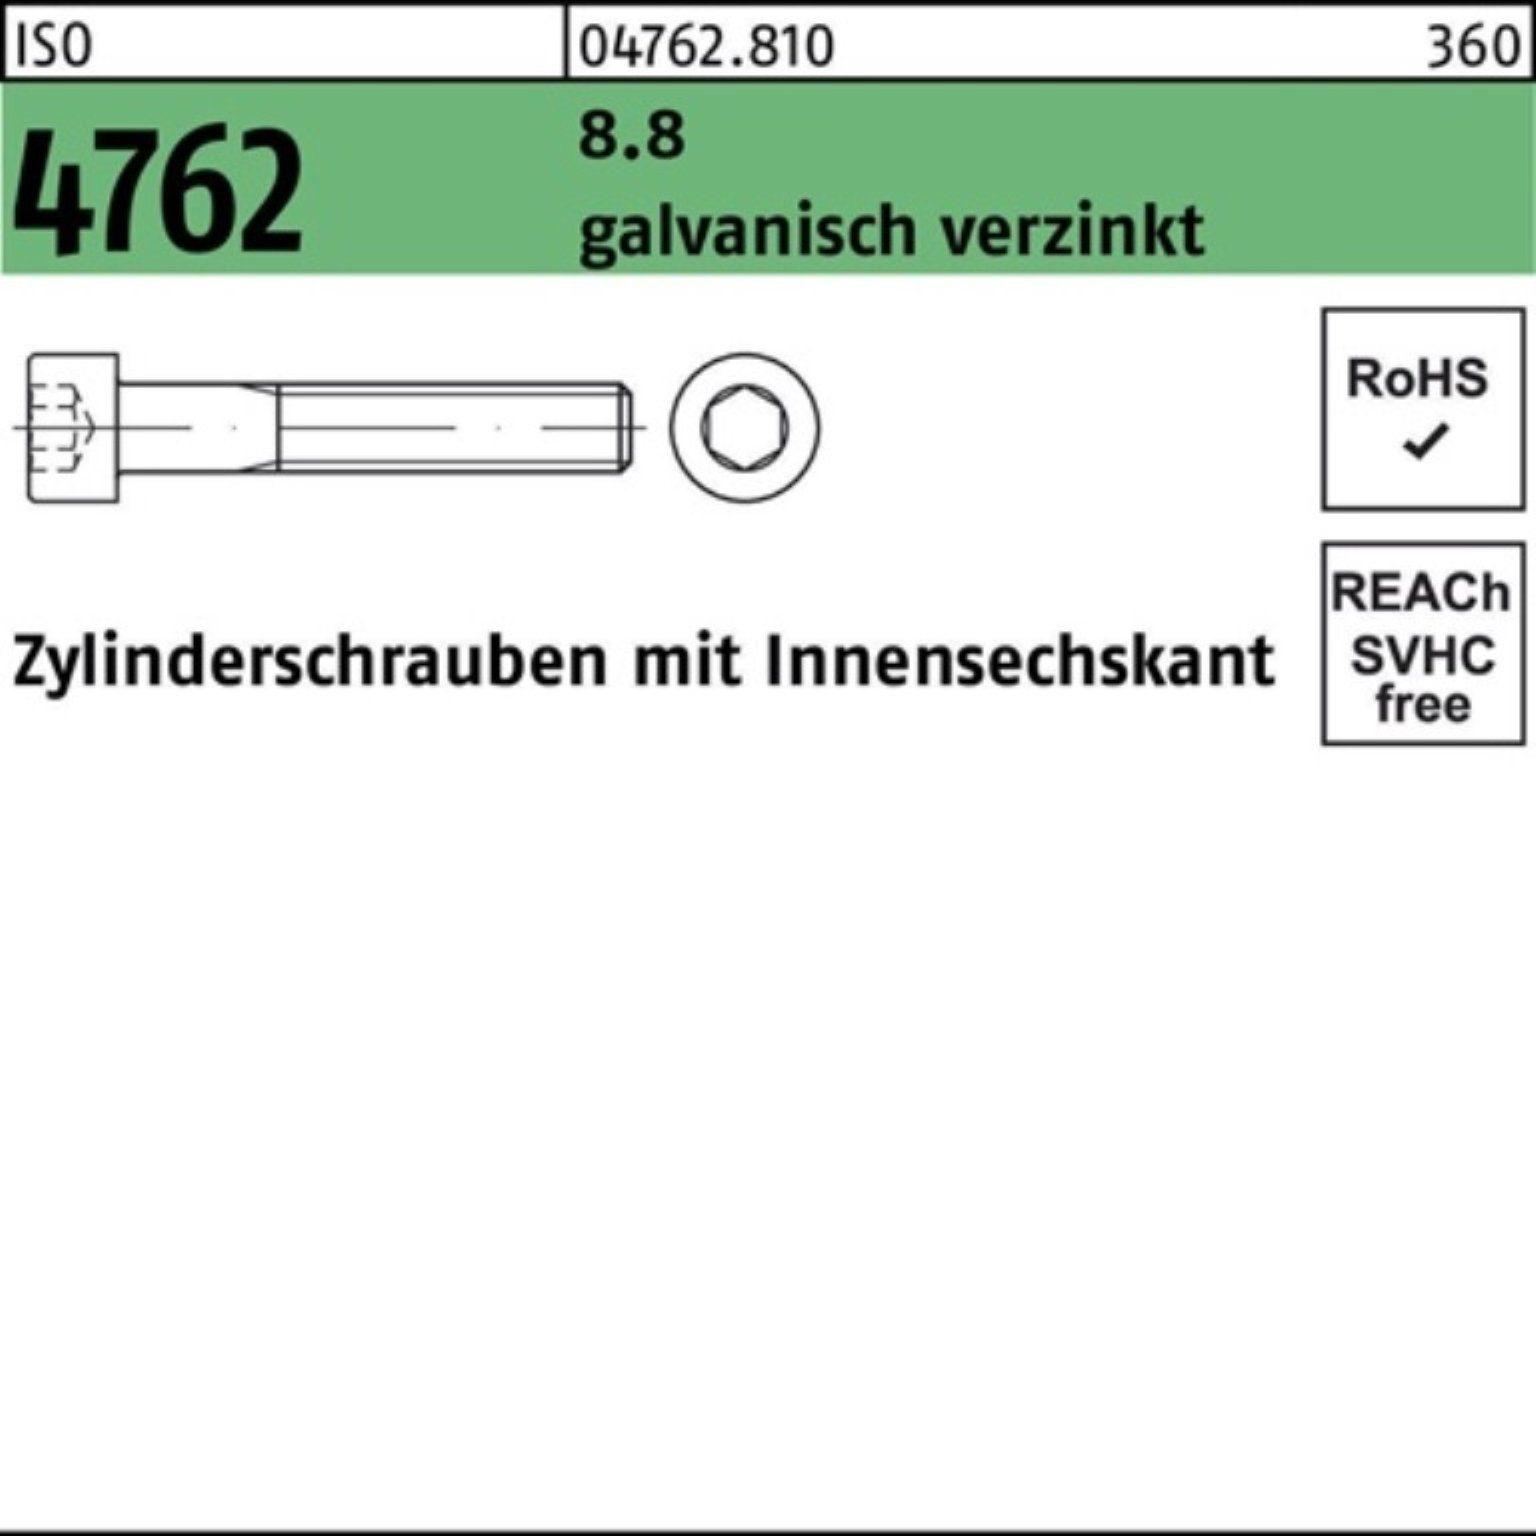 Reyher Zylinderschraube 100er ISO Zylinderschraube Innen-6kt galv.verz. 4762 1 8.8 Pack M8x110